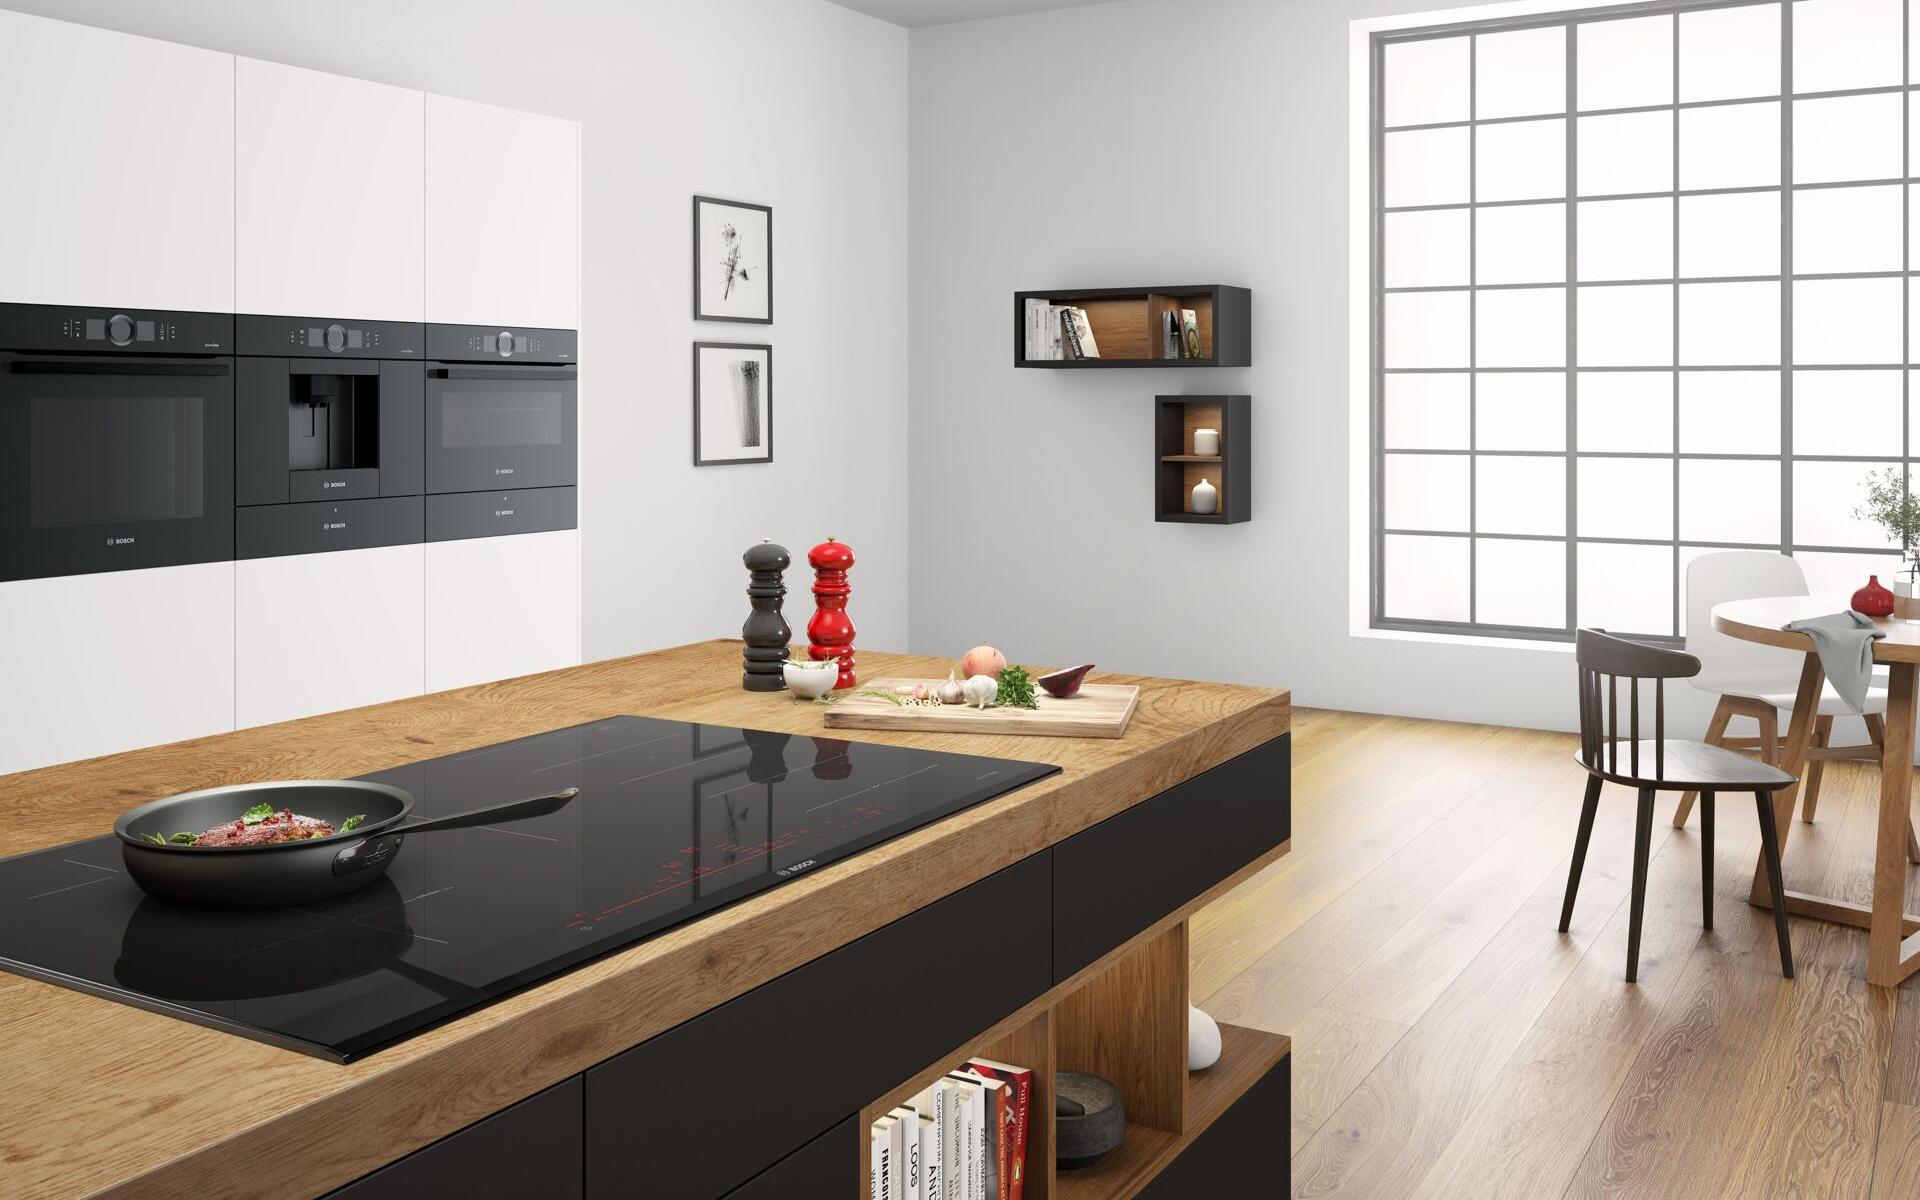 Modern white kitchen featuring a SCHOTT CERAN Miradur® glass-ceramic cooktop